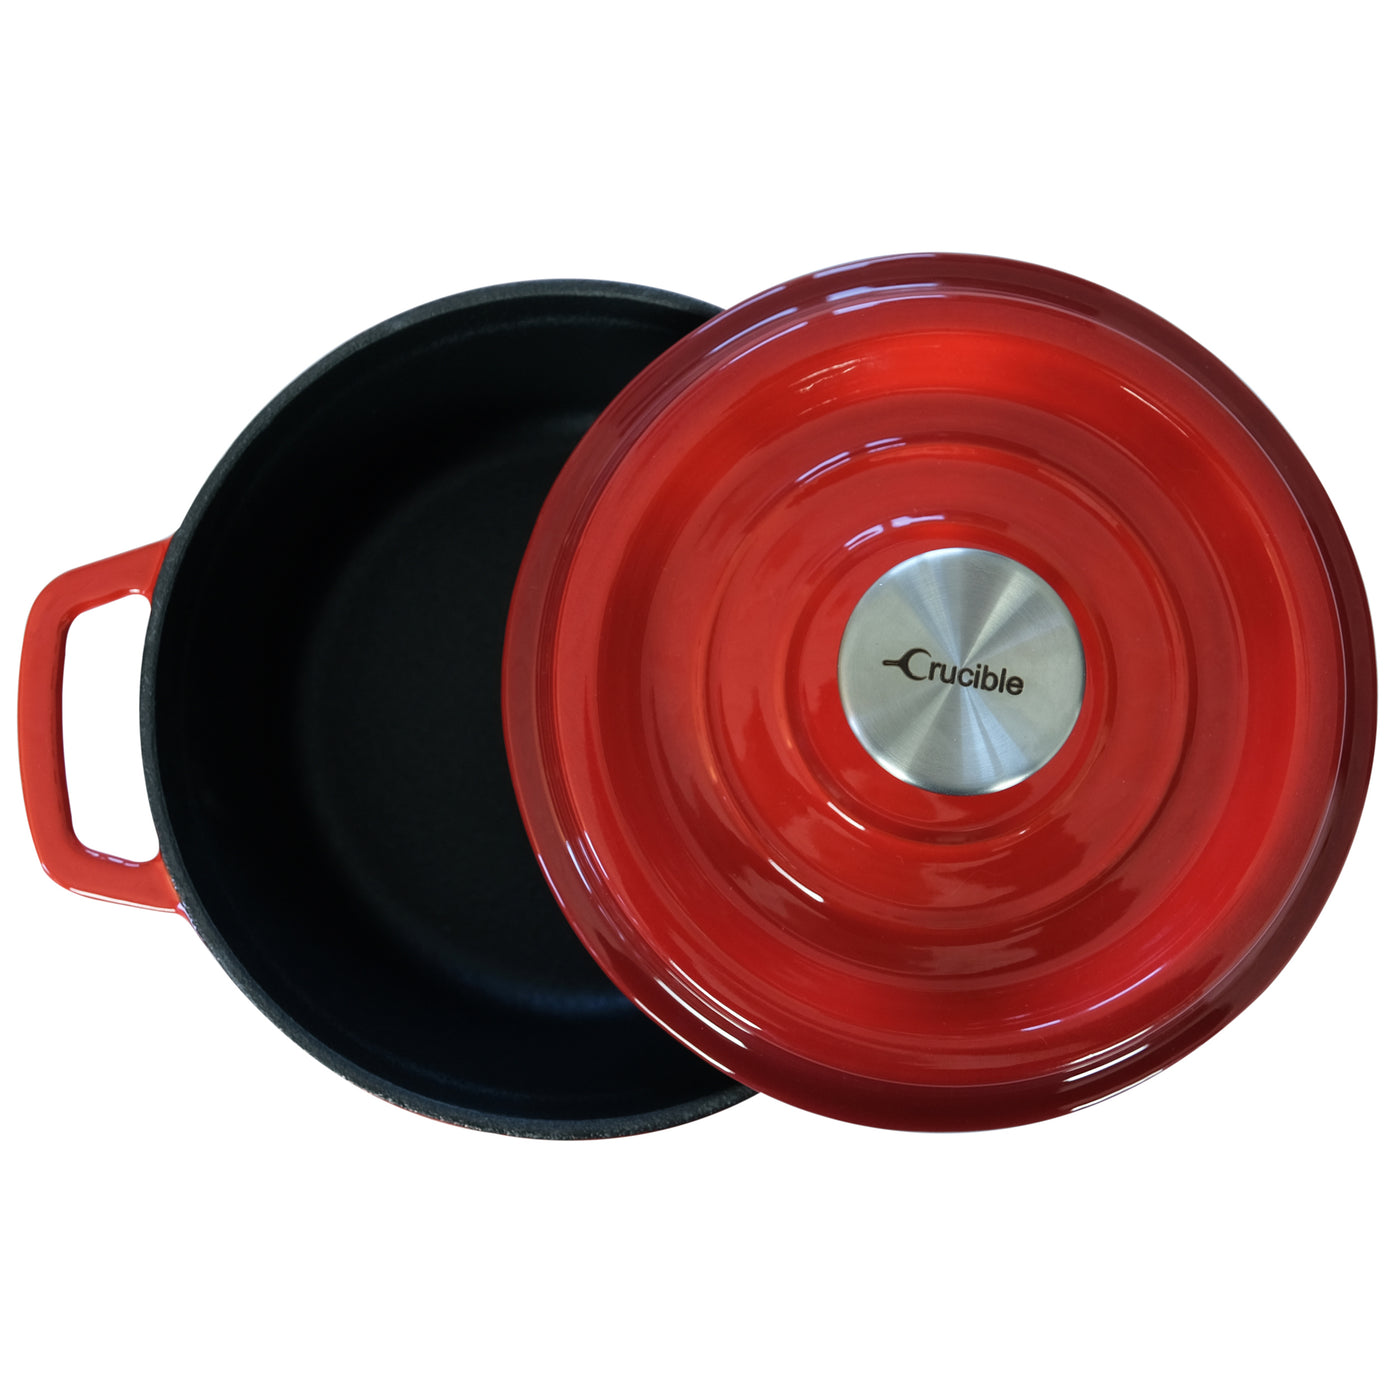 وعاء فرن هولندي من الحديد الزهر المطلي بالمينا (قطر 7.87 بوصة / 20 سم) طبق خزفي - أحمر مستدير